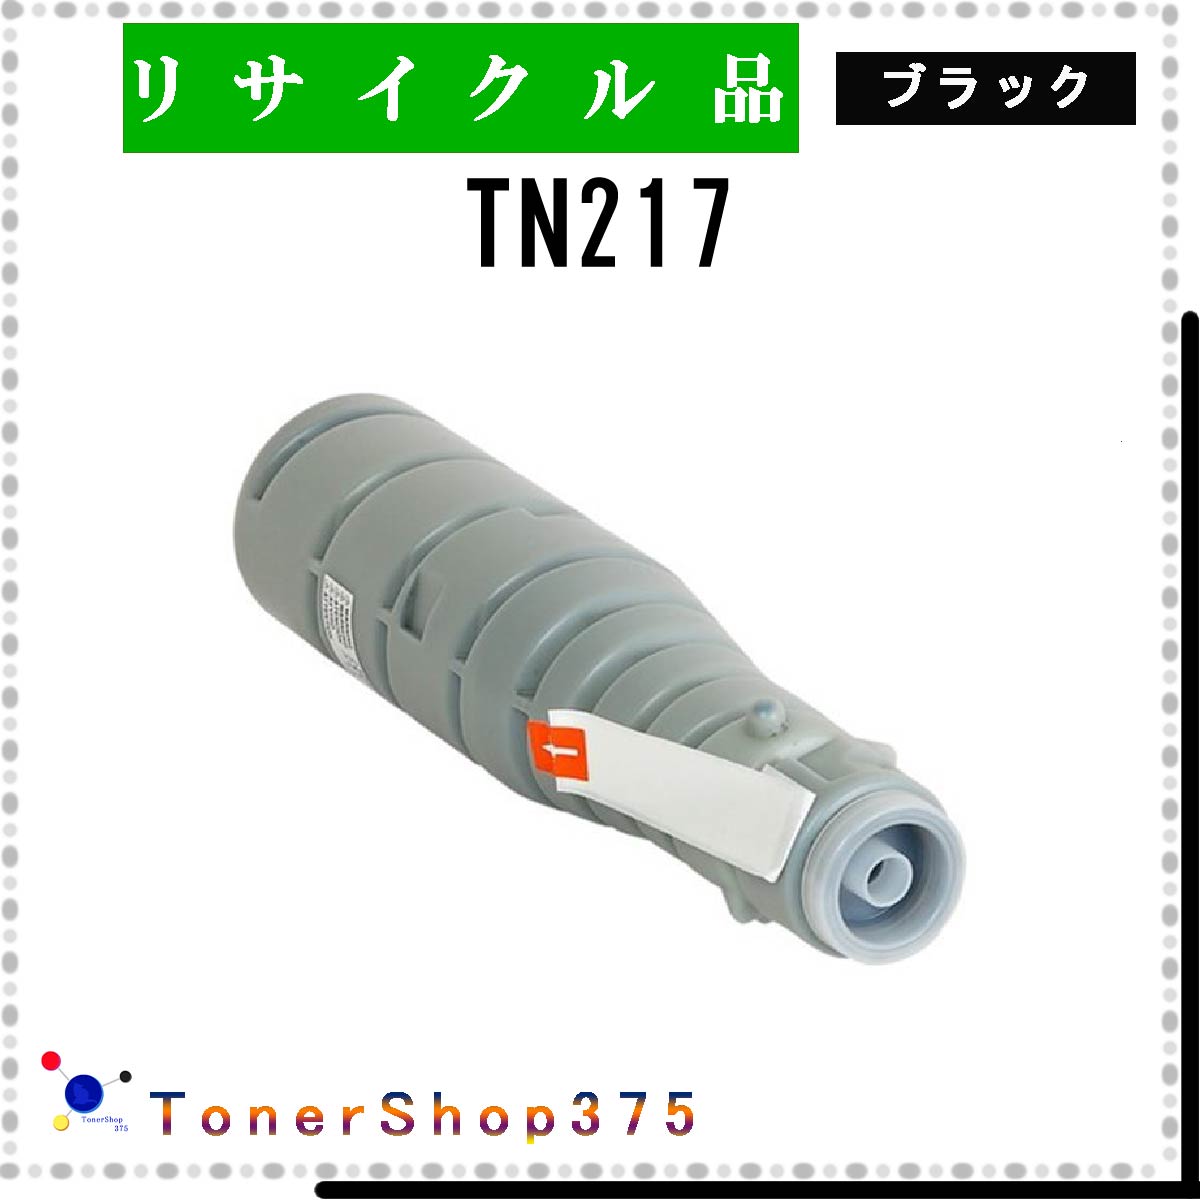 MINOLTA y TN217 z ubN TCN gi[ LTCNH蒼 aĐ ~m^